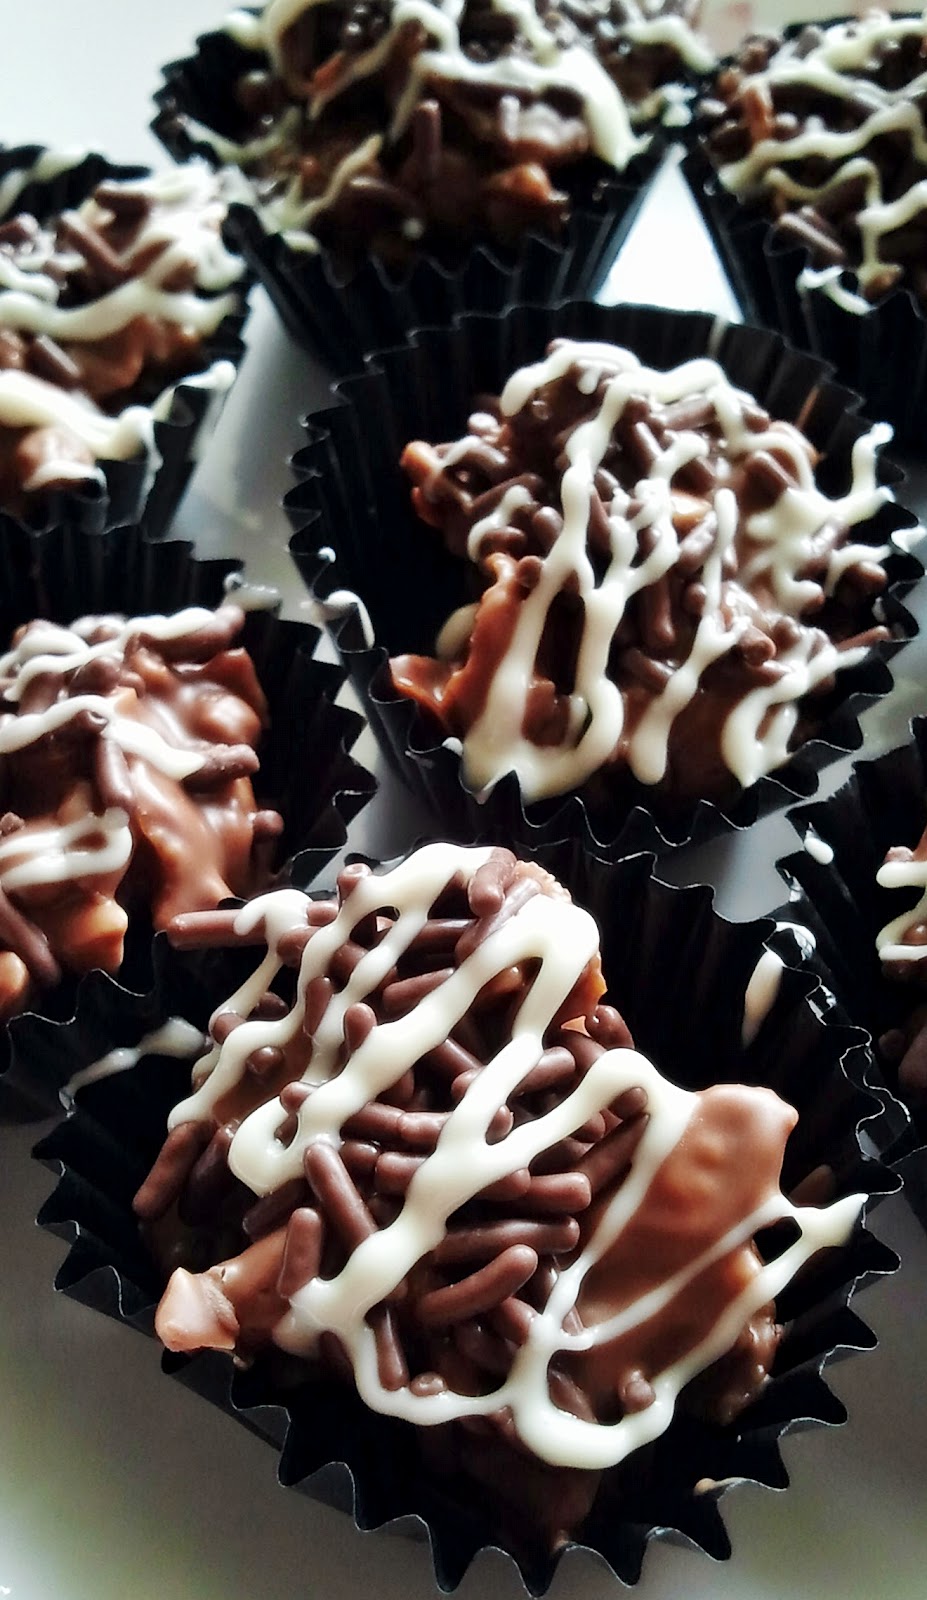 CORETAN DARI DAPUR: Bijirin Coklat Kekacang